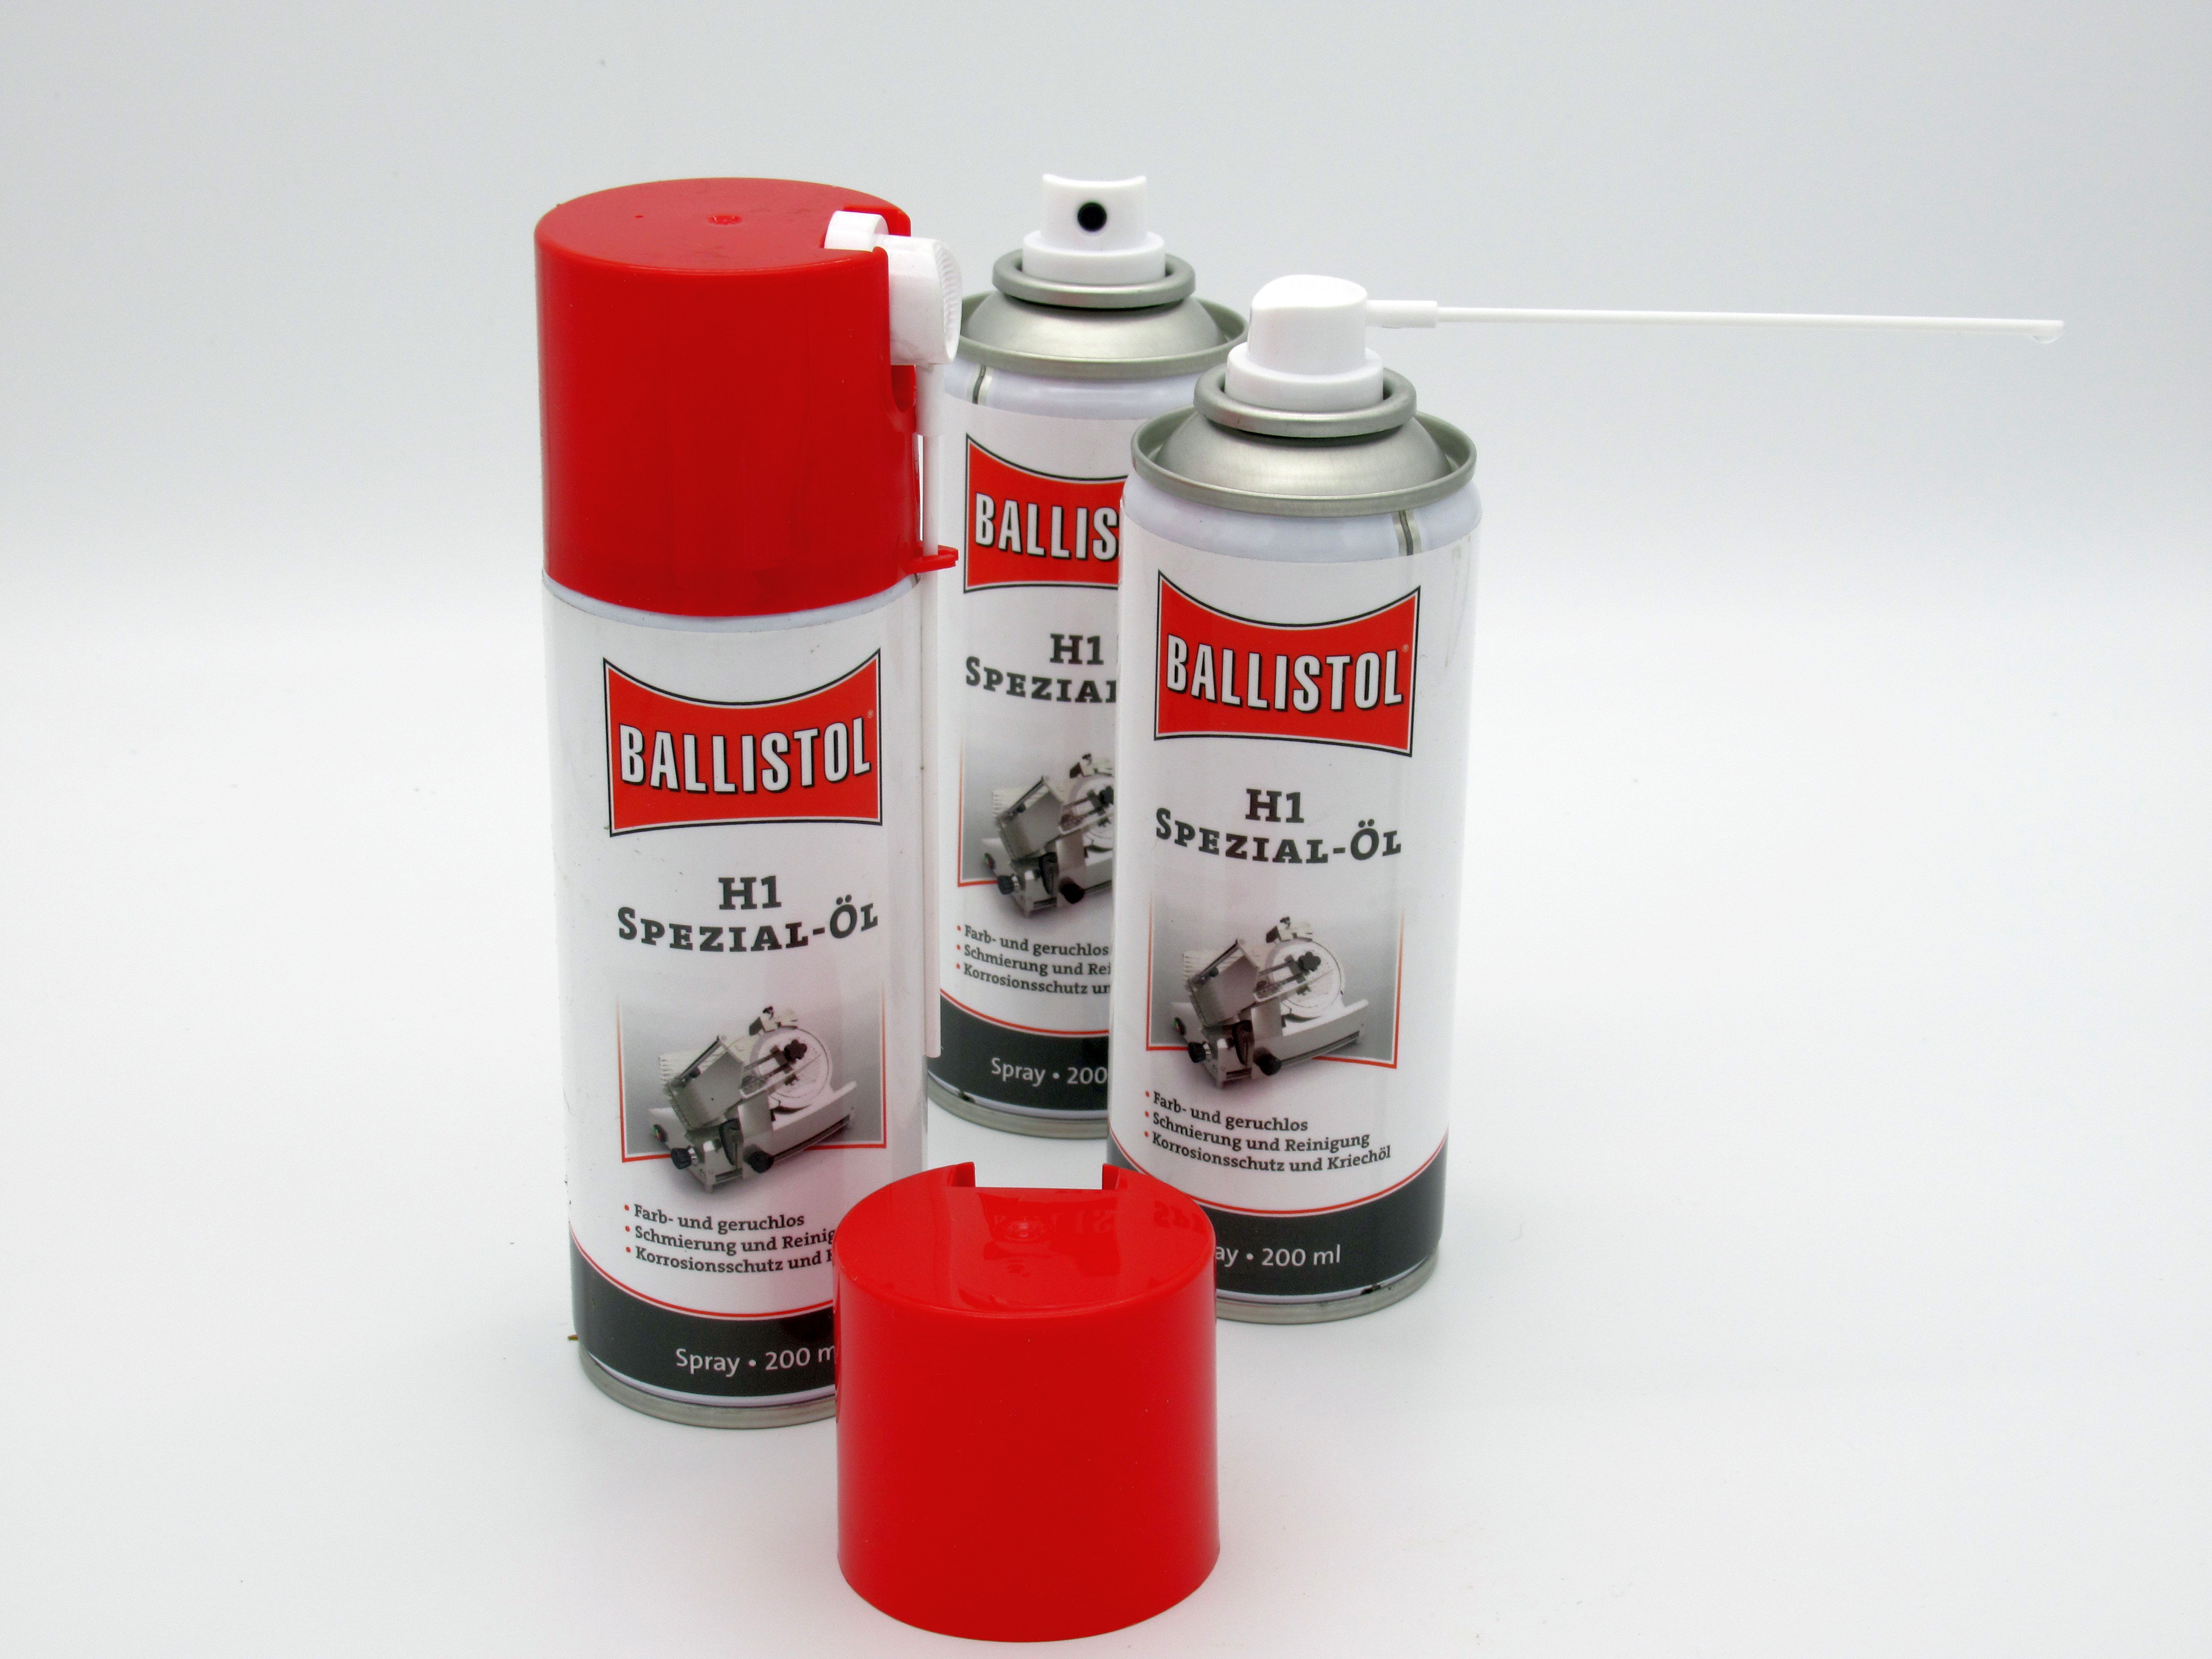 KLEVER Fallen-Öl Ballistol 65 ml